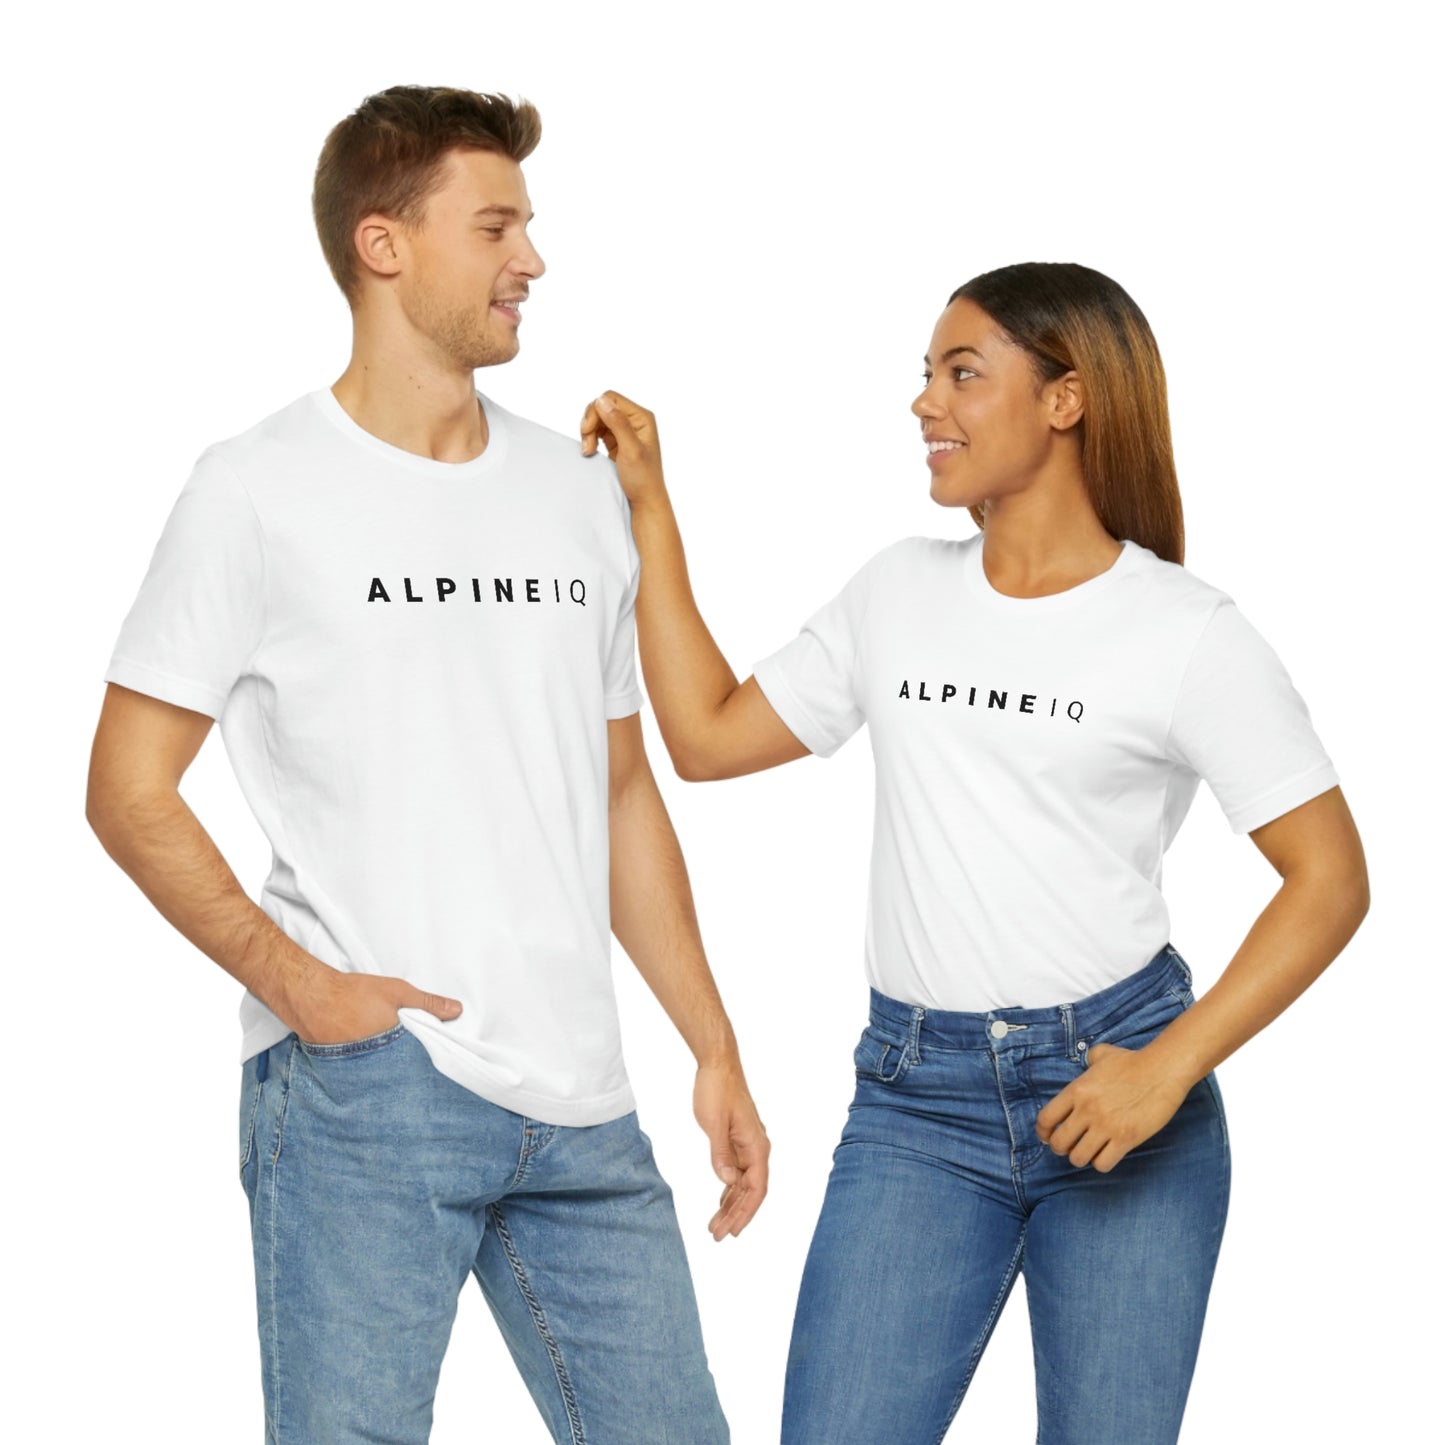 Alpine IQ Logo Short Sleeve T-Shirt - Light Weight